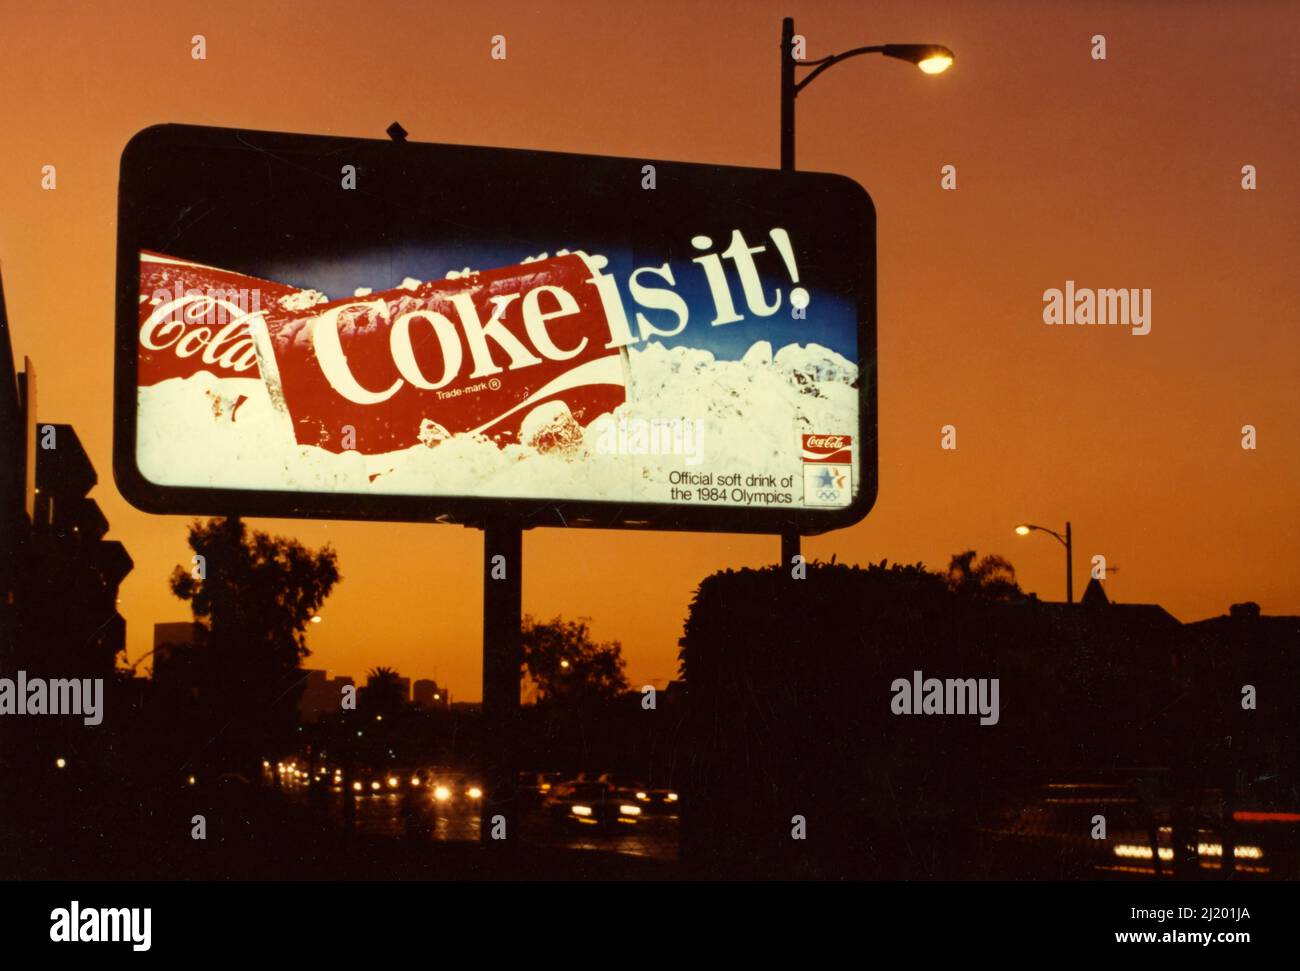 Un tabellone retroilluminato mostra un annuncio per Coca Cola è visto al tramonto di Los Angeles, CA circa 1984. Foto Stock